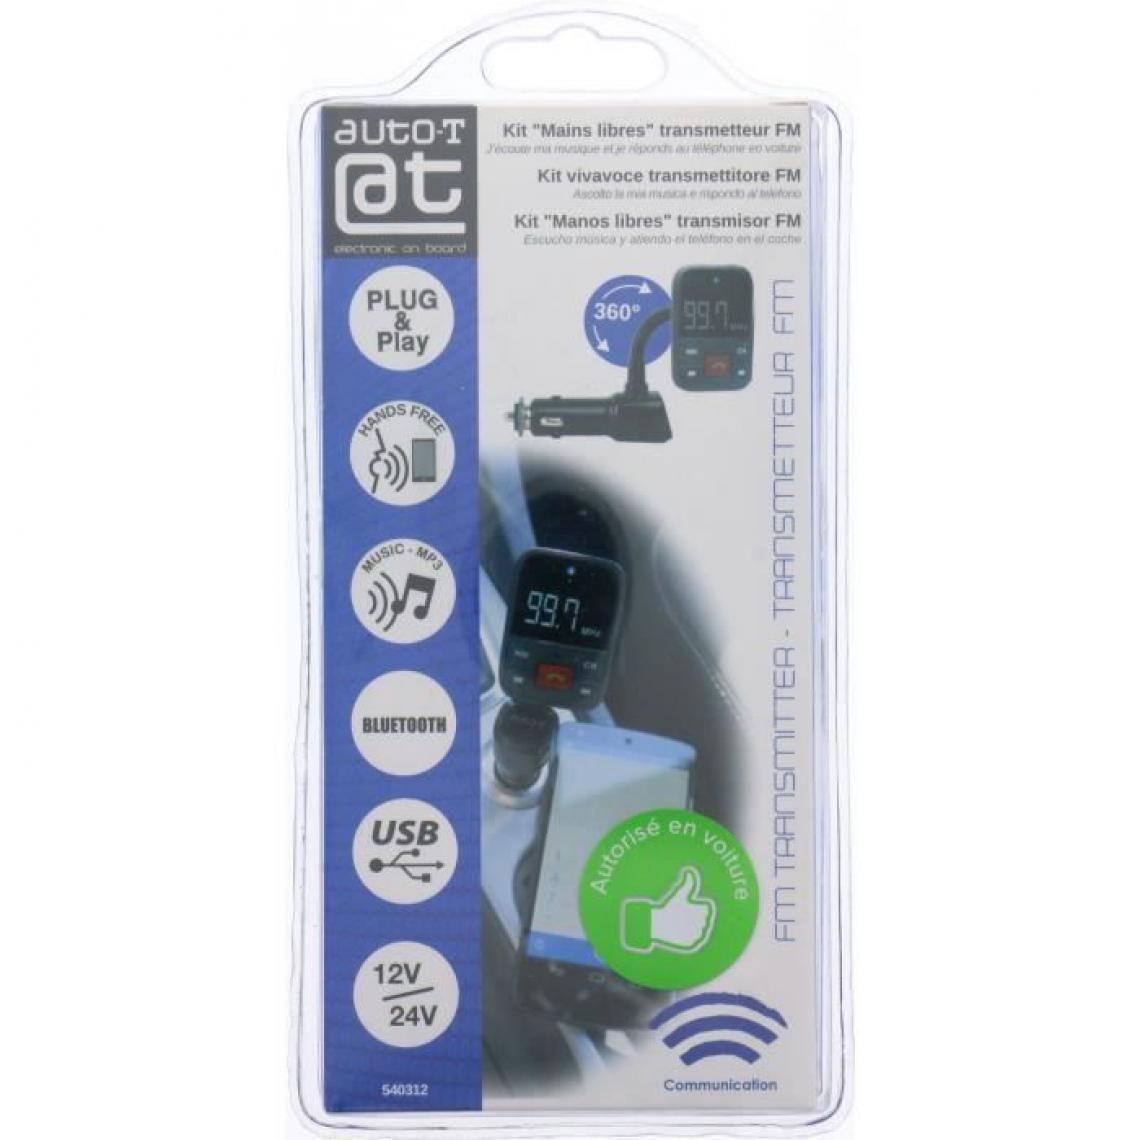 Cstore - AUTO-T Transmetteur FM - Kit mains libres - Autres accessoires smartphone